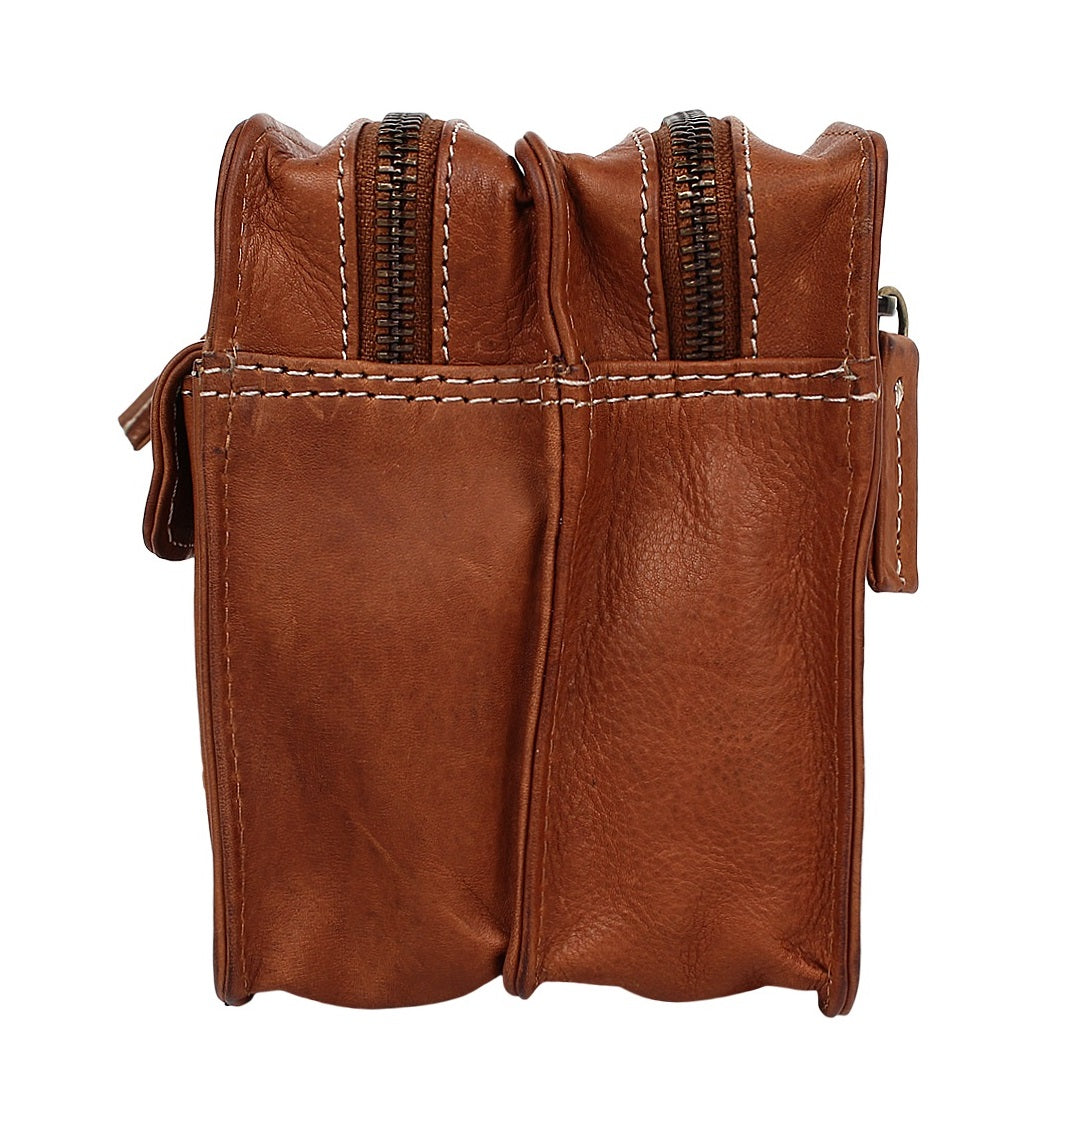 Leather Hand Pouch Men Purse Wallet Clutch Wrist Bag